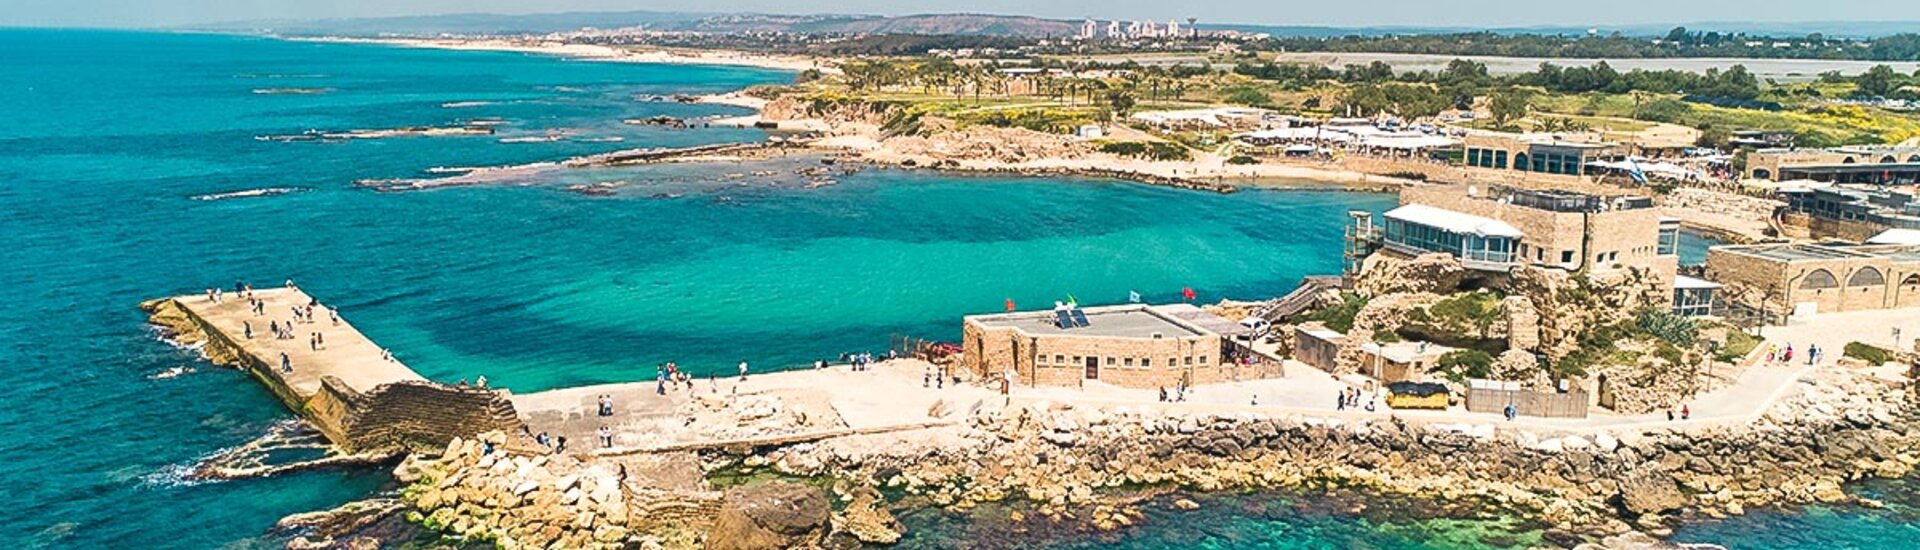 Historischer Hafen von Caesarea